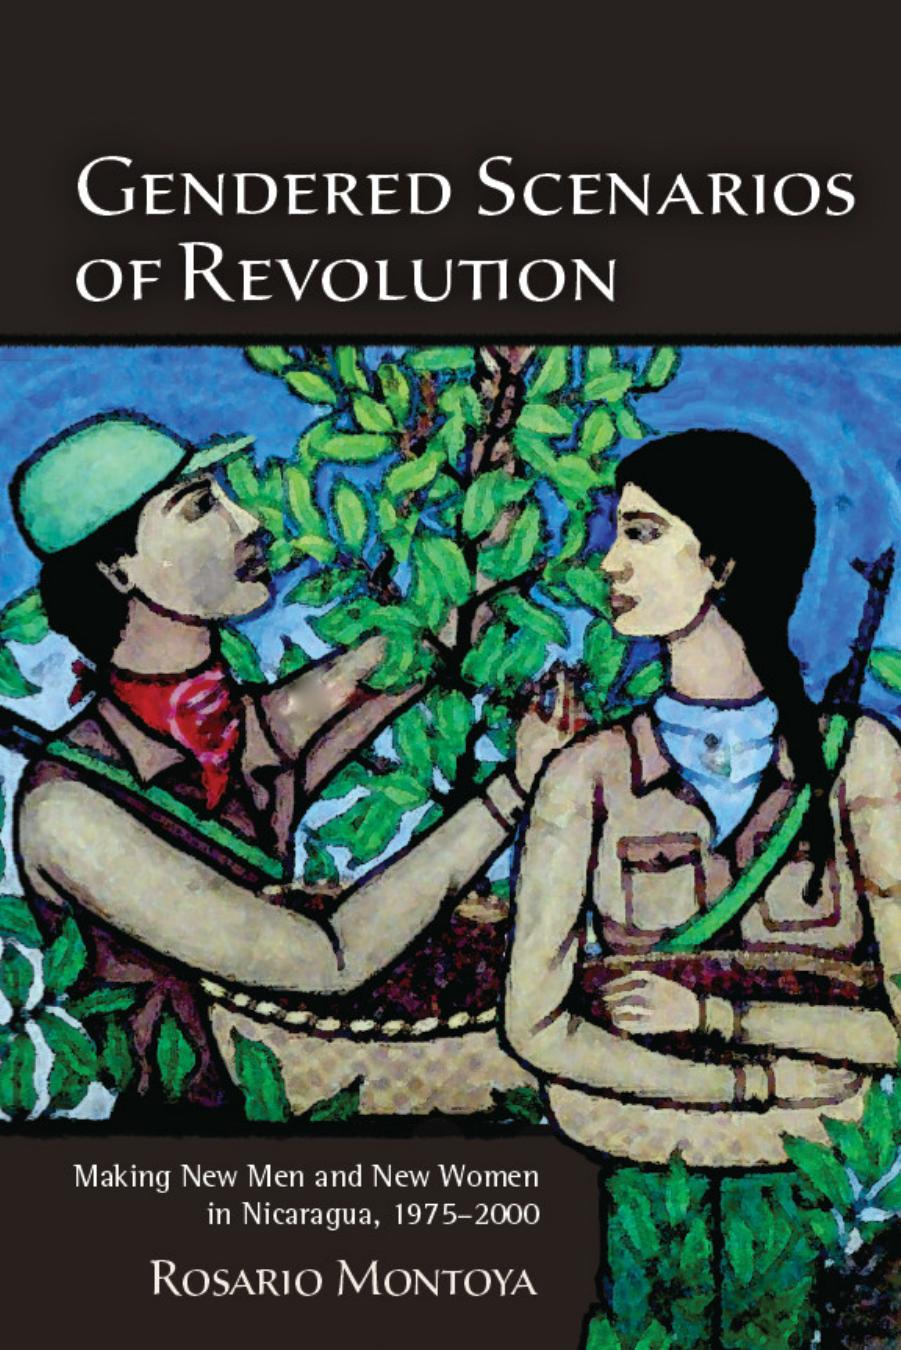 Gendered Scenarios of Revolution : Making New Men and New Women in Nicaragua, 1975-2000 by Rosario Montoya